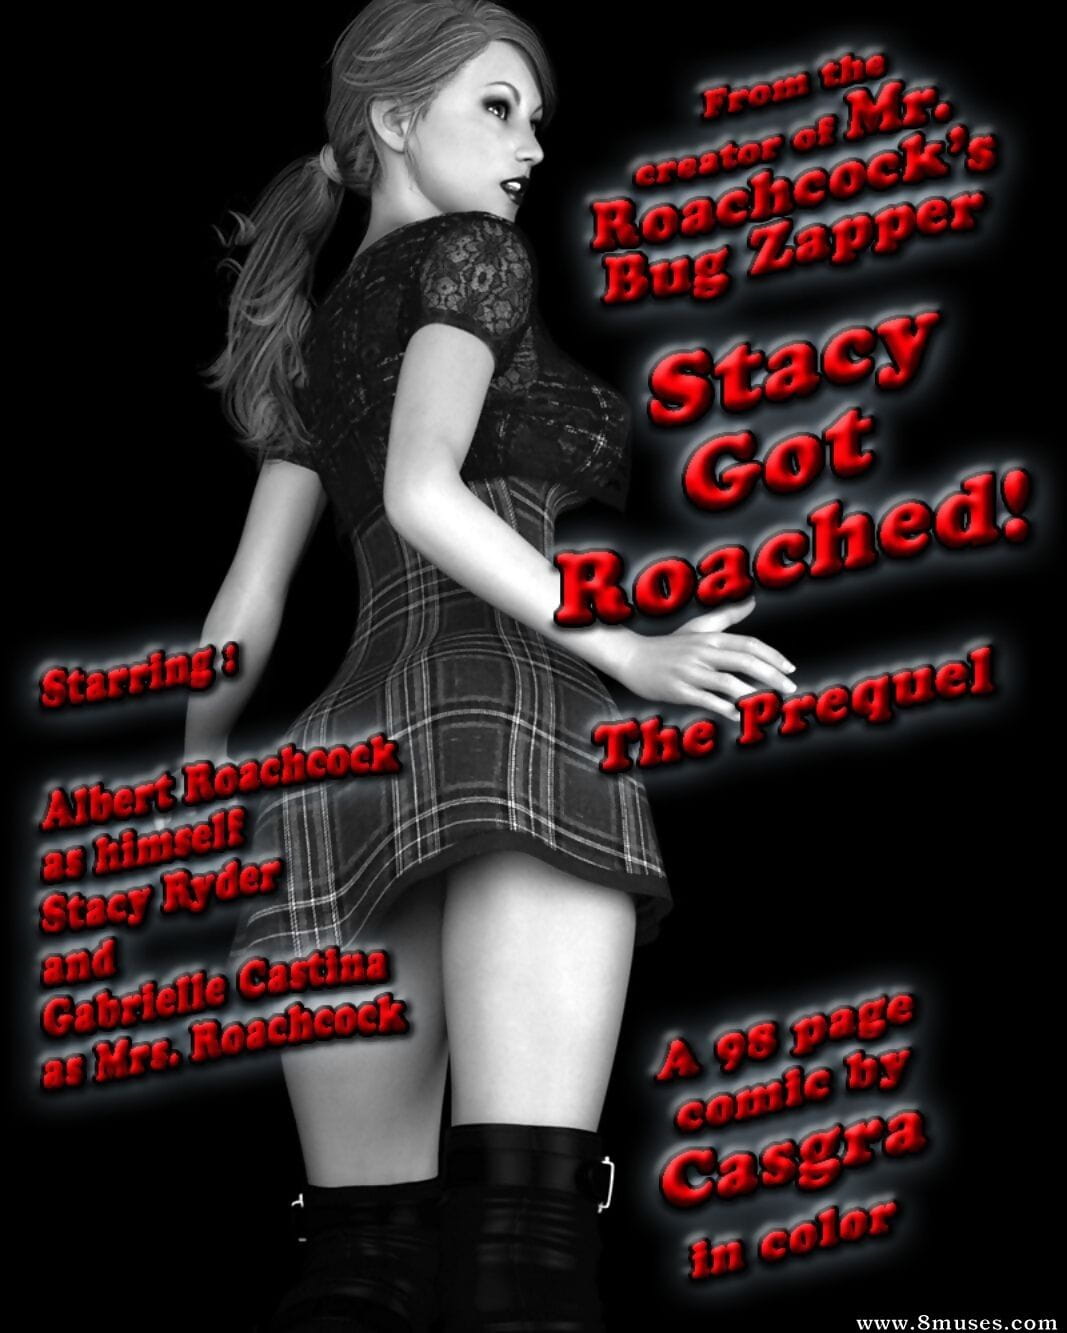 - Stacy Jest page 1